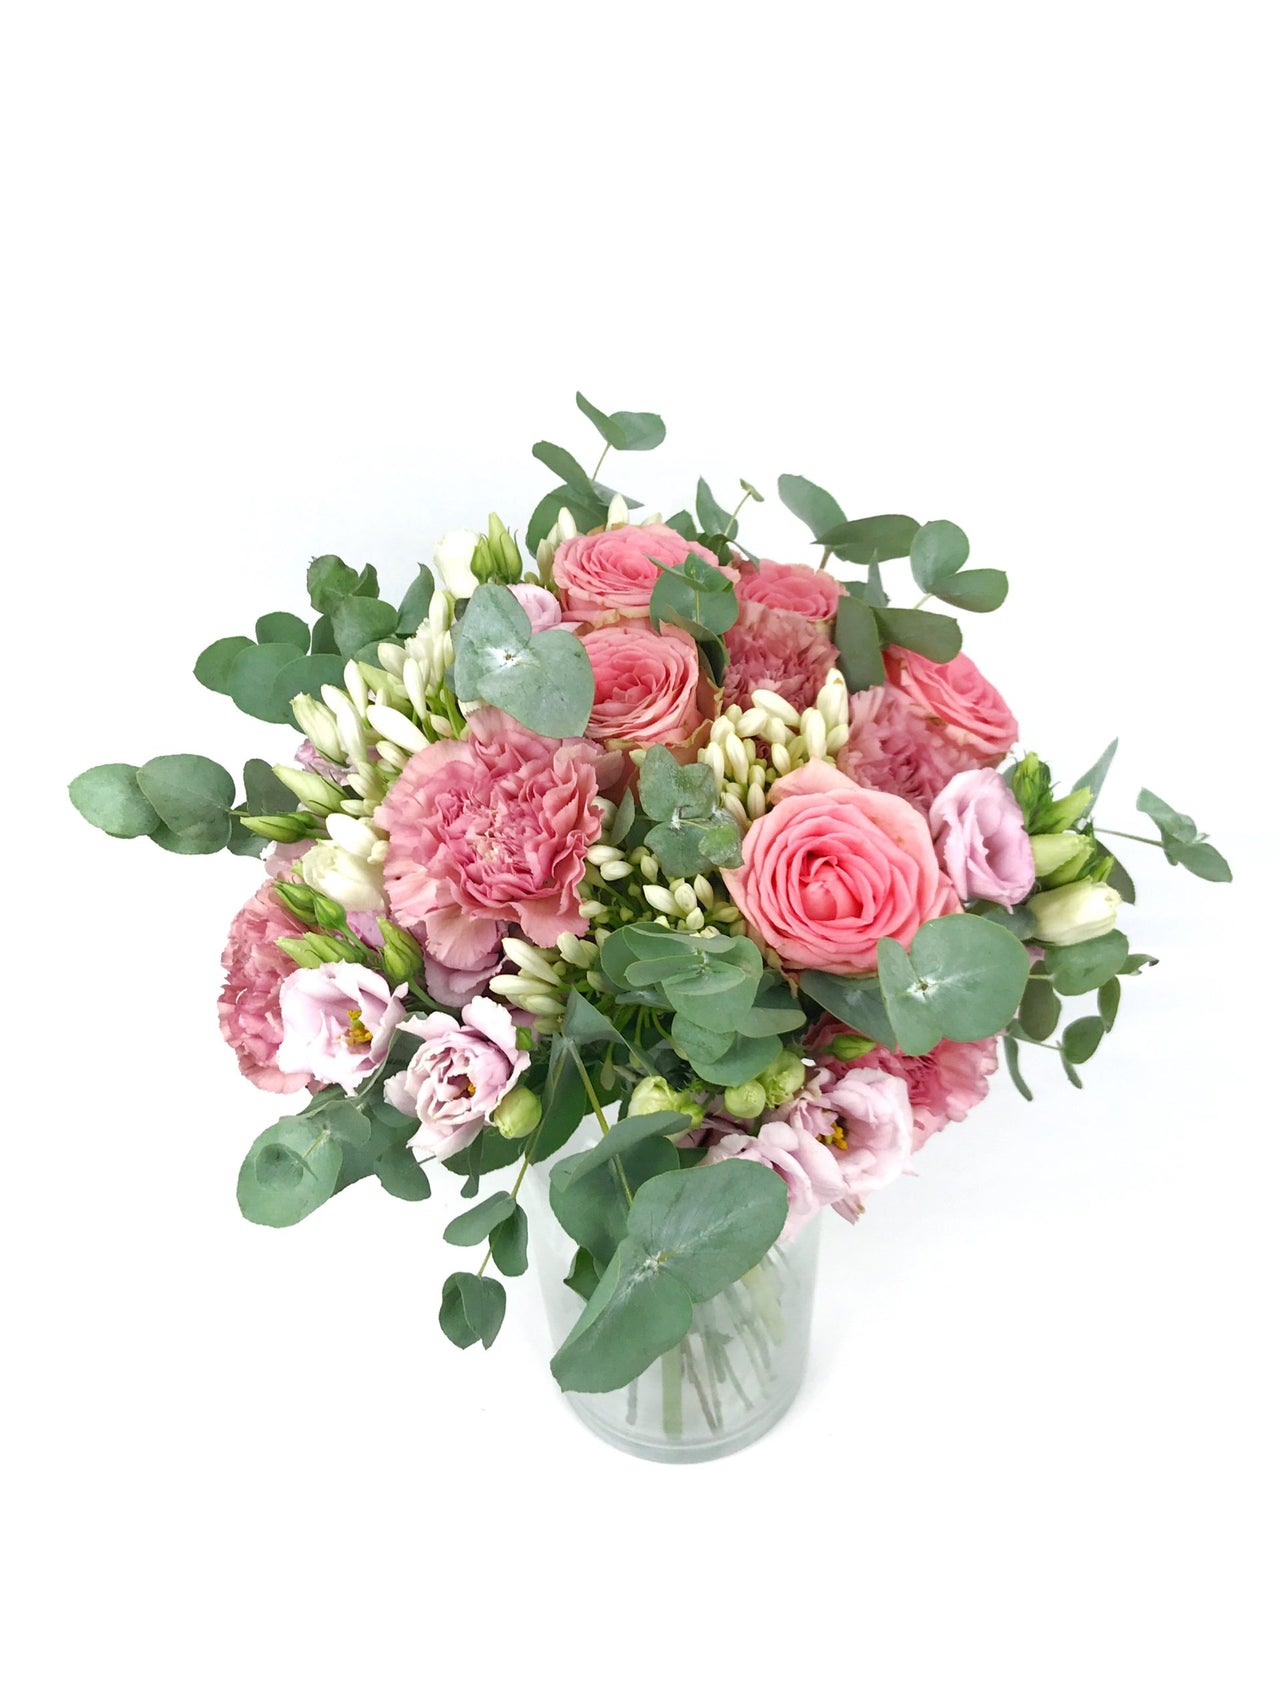 Envoi de fleurs pour anniversaire - Grand bouquet Sofia rose